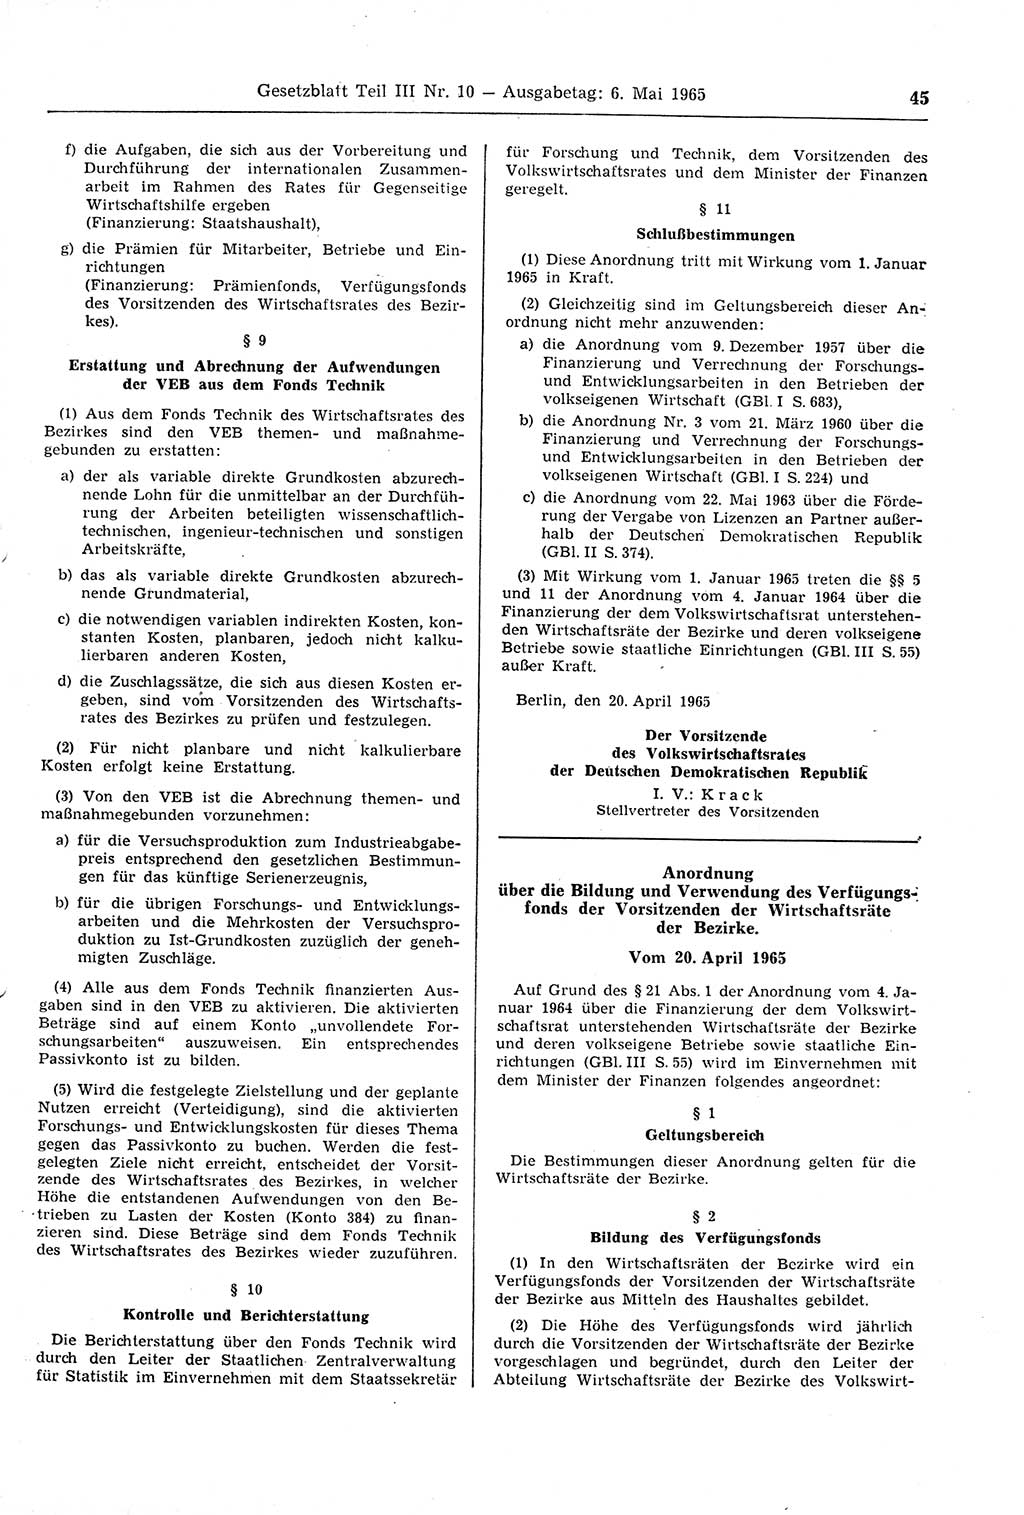 Gesetzblatt (GBl.) der Deutschen Demokratischen Republik (DDR) Teil ⅠⅠⅠ 1965, Seite 45 (GBl. DDR ⅠⅠⅠ 1965, S. 45)